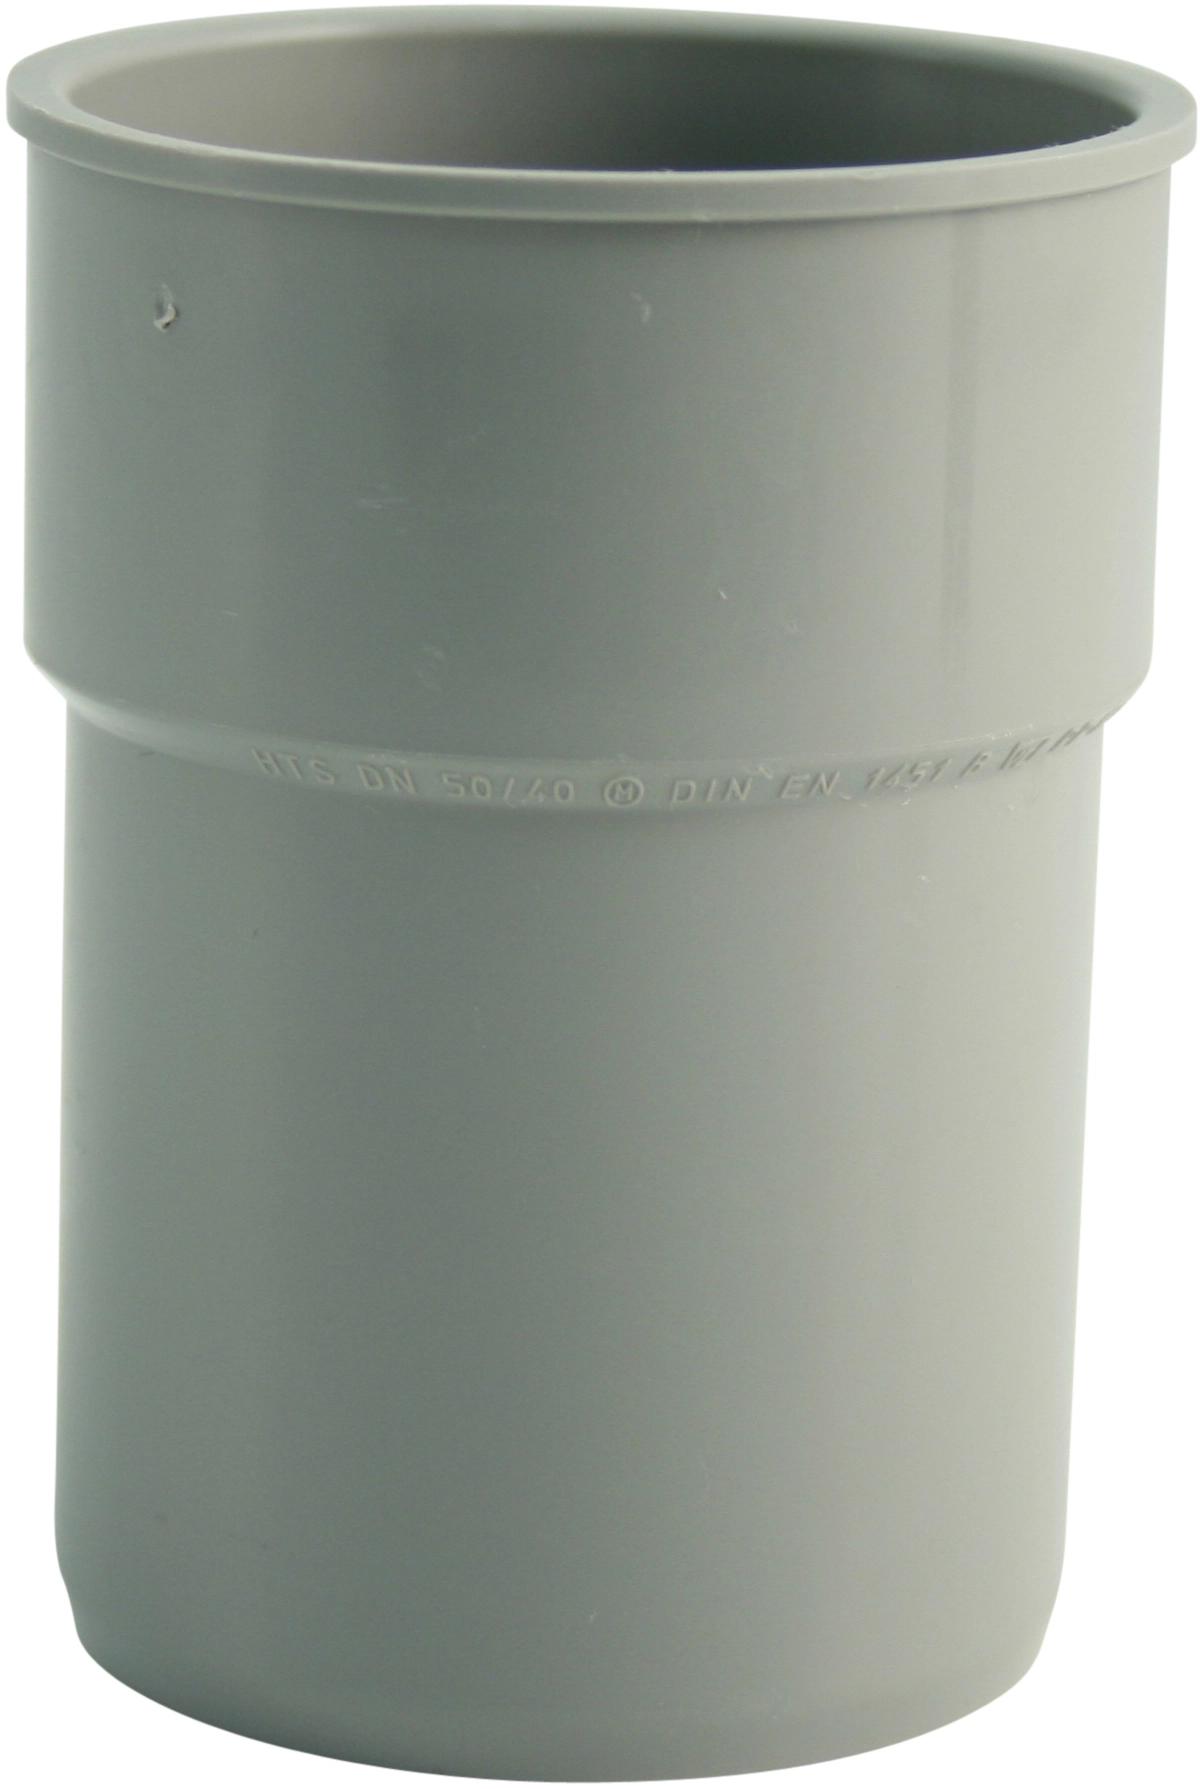 Airfit Schlauchnippel DN 50 8,2 mm - 26,5 mm kaufen bei OBI